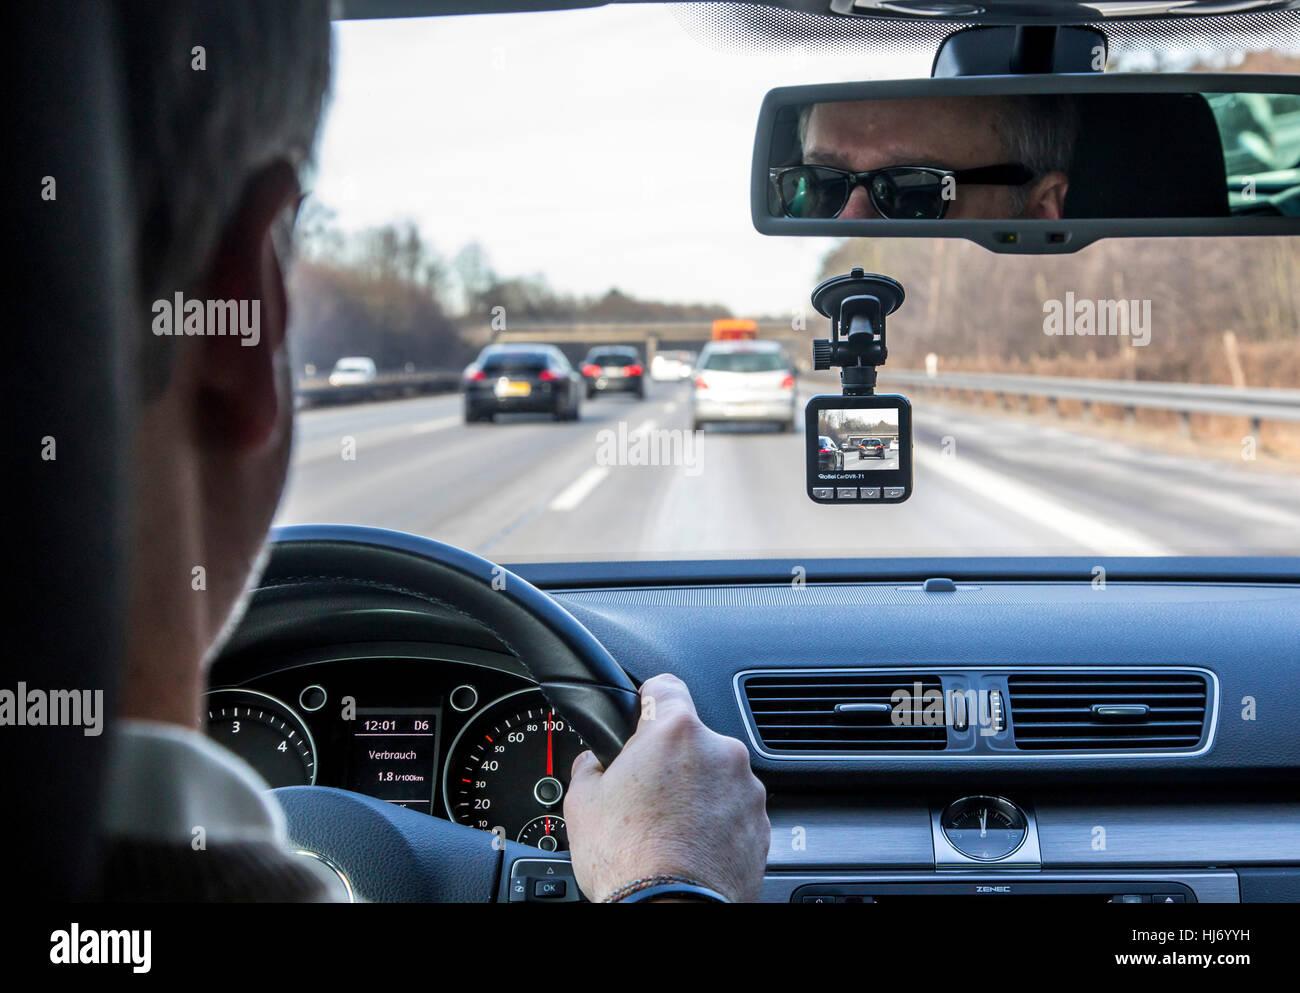 Dashcam dans une voiture particulière, d'une caméra vidéo sur le pare-brise, enregistre en permanence le trafic à l'avant du véhicule, à l'accident de la documentation, Banque D'Images